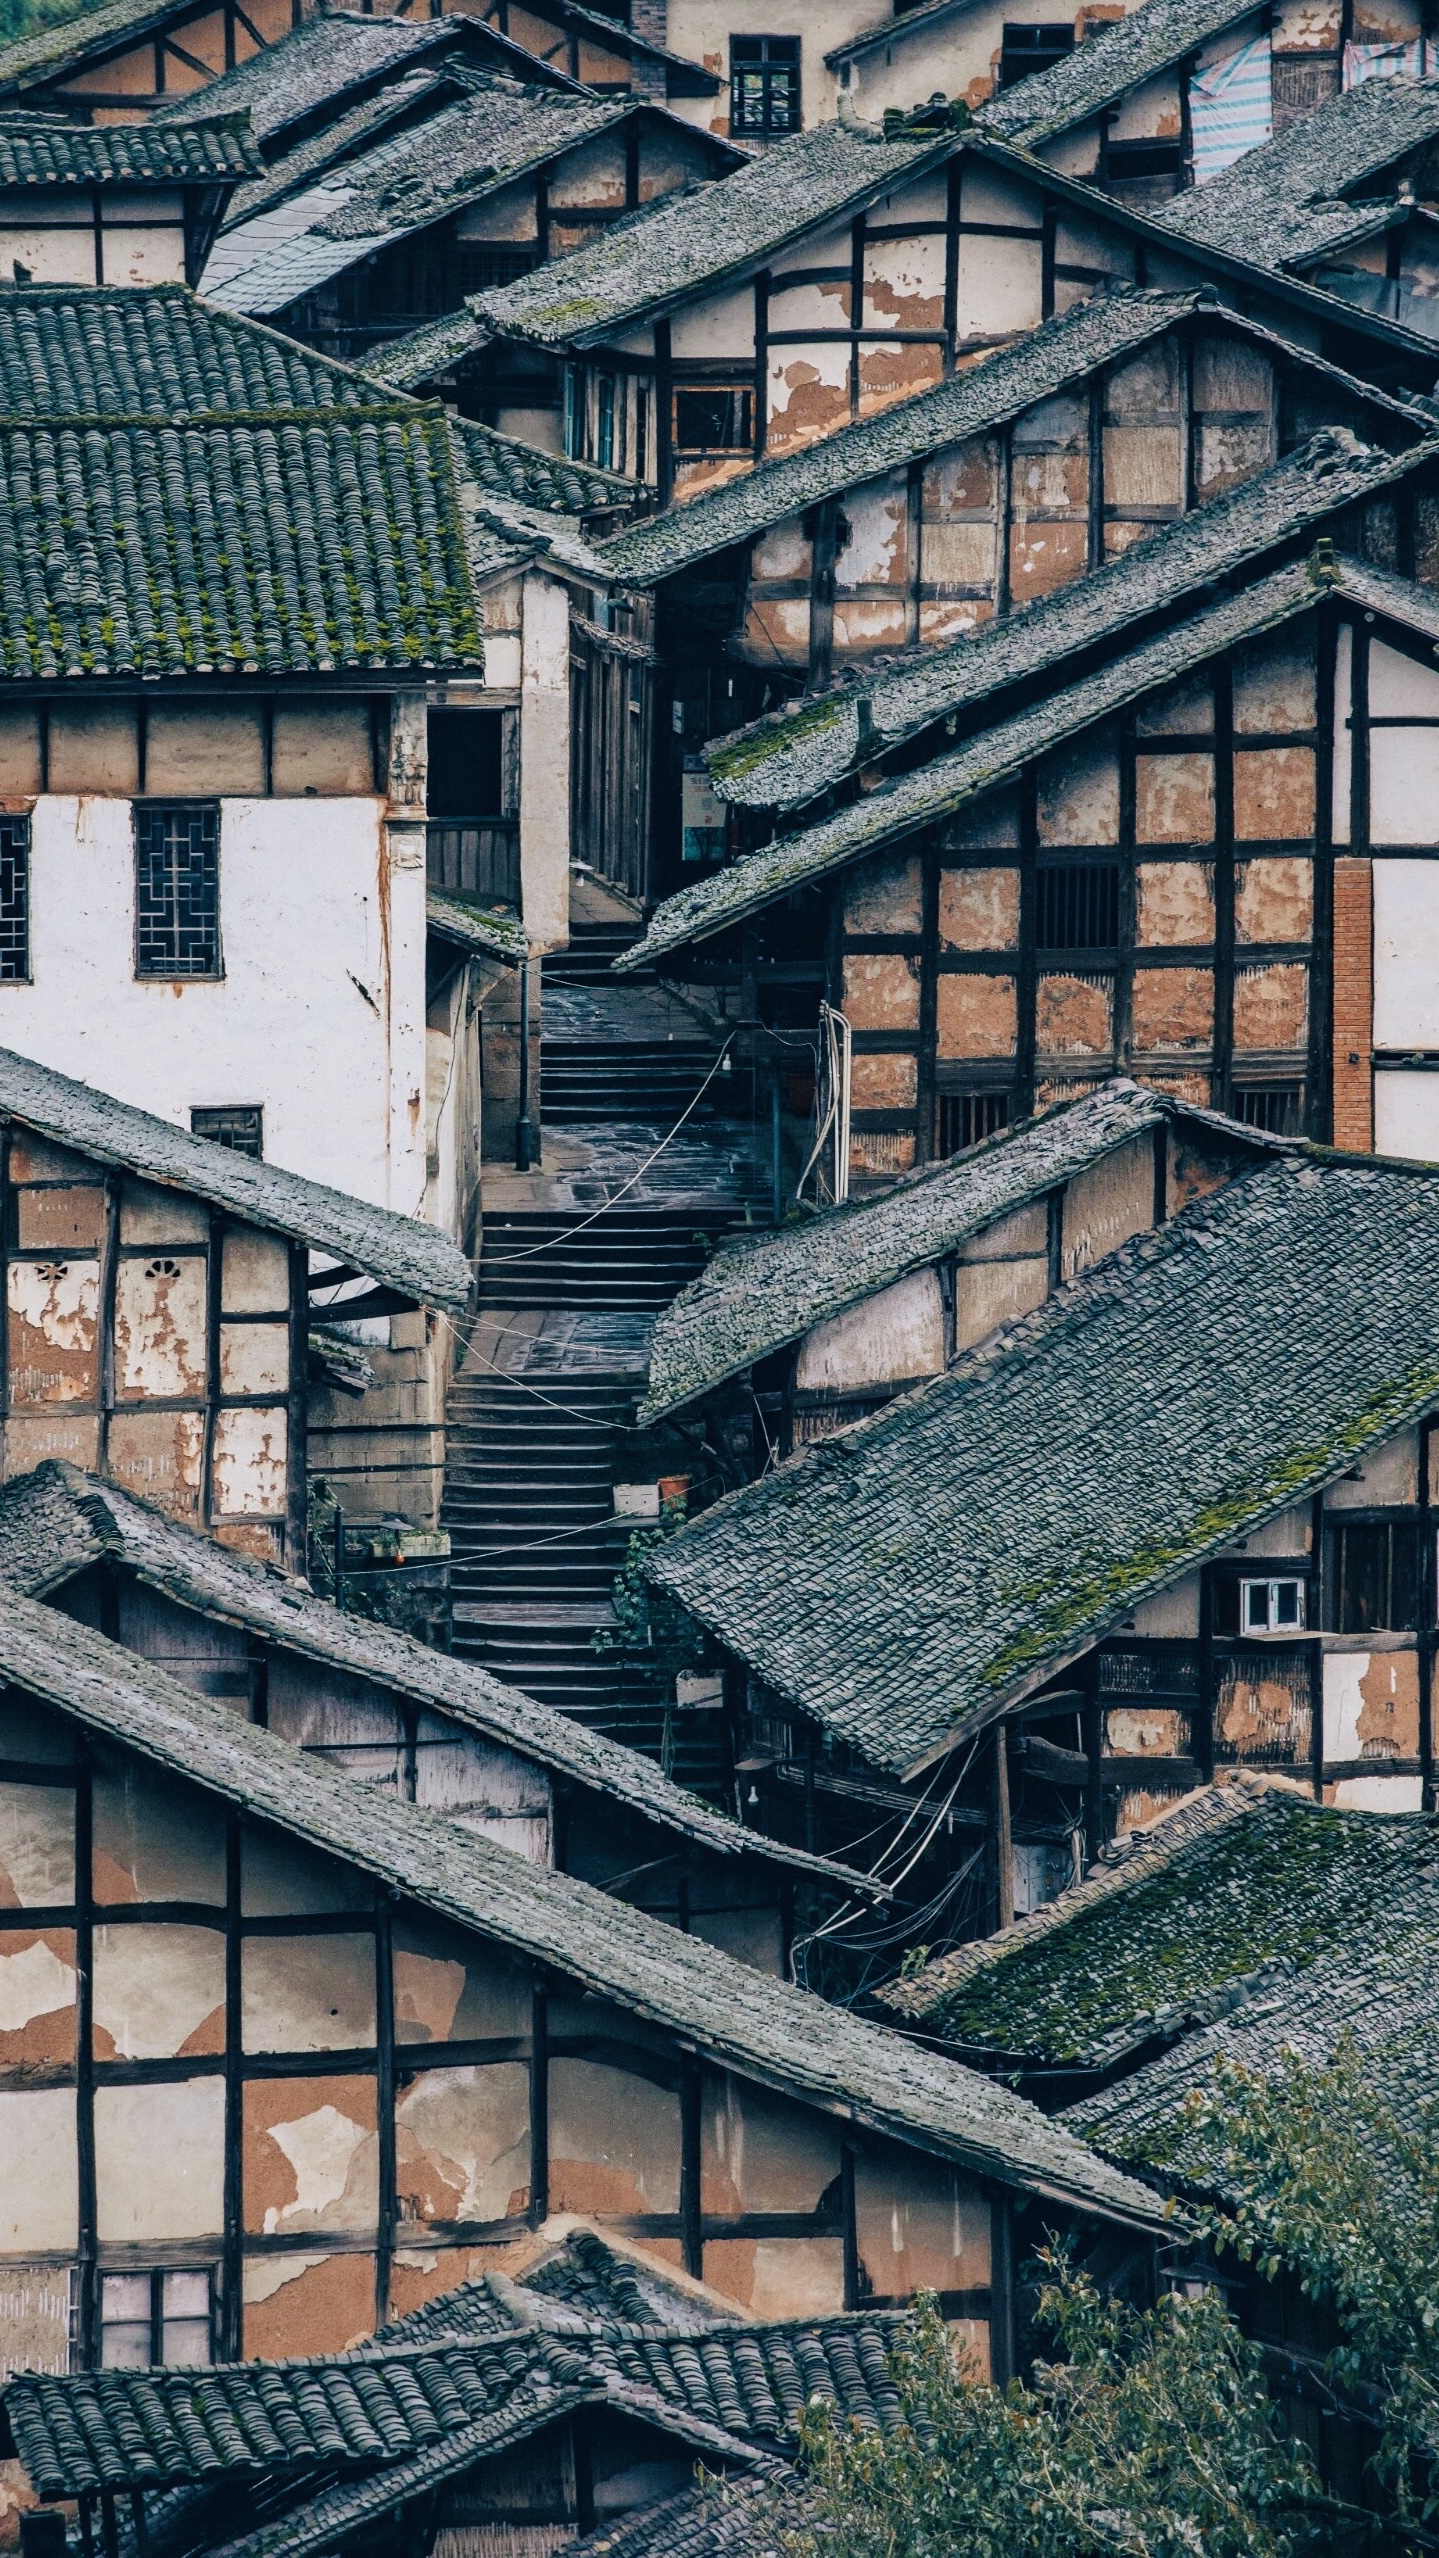 中国山地建筑的精华”一座游客罕至的隐秘古镇🏜️期待你的到来